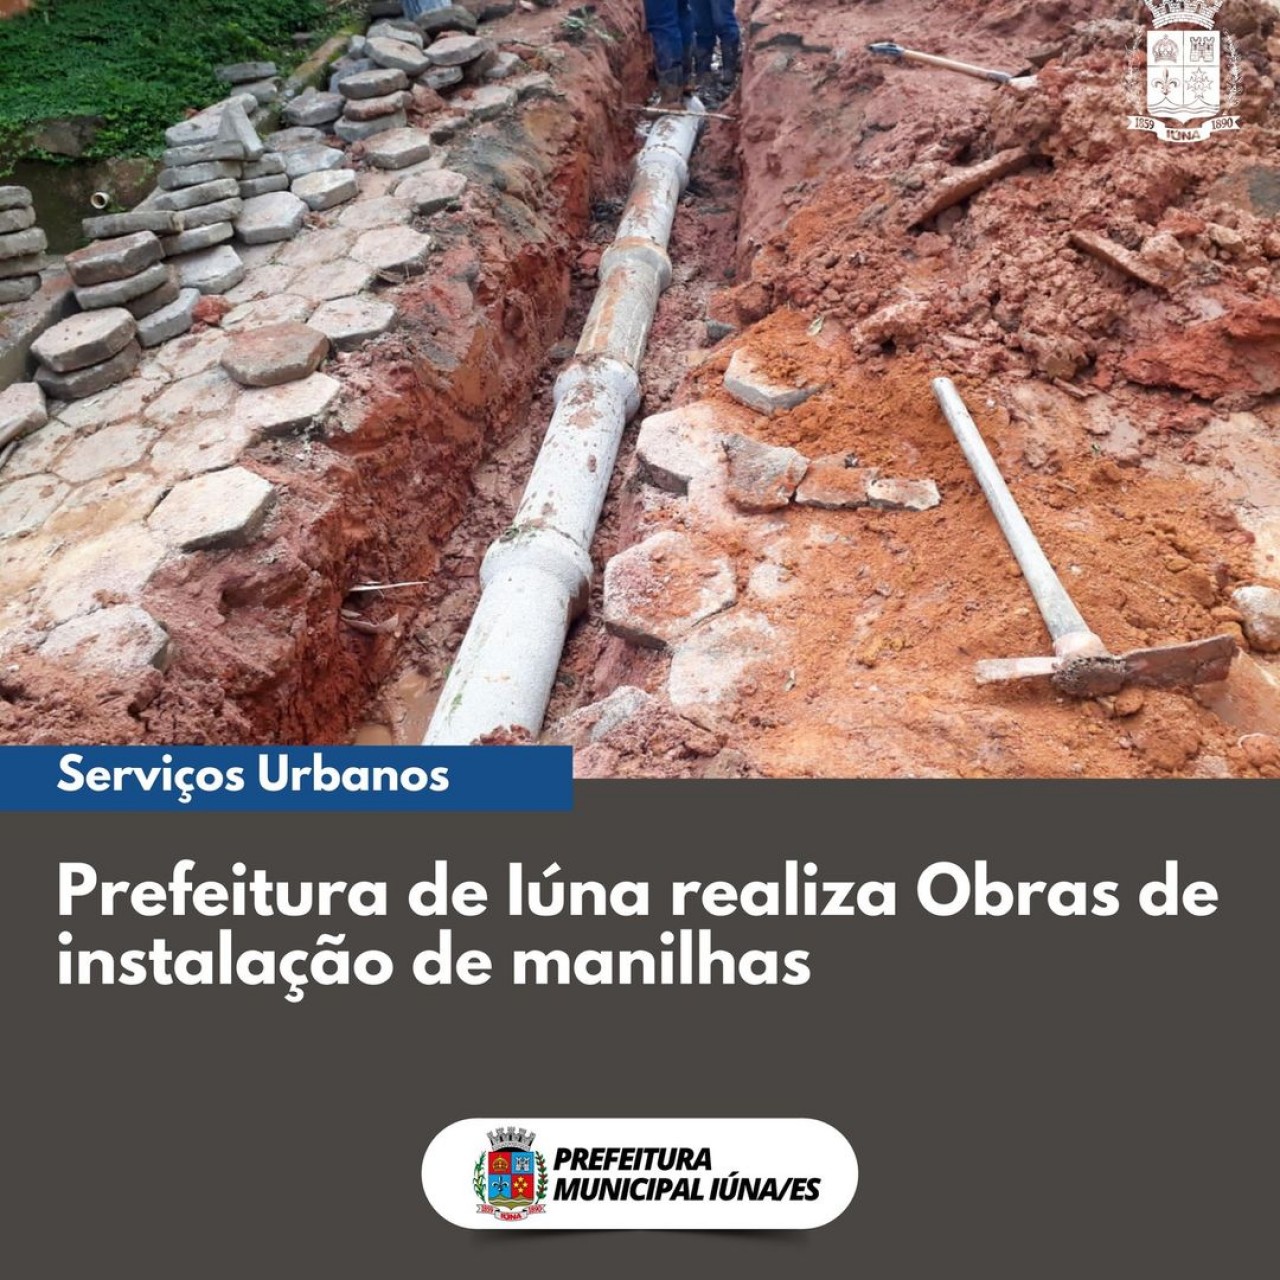 OBRA 88 -  instalação de manilhas sendo realizados em todo o município.